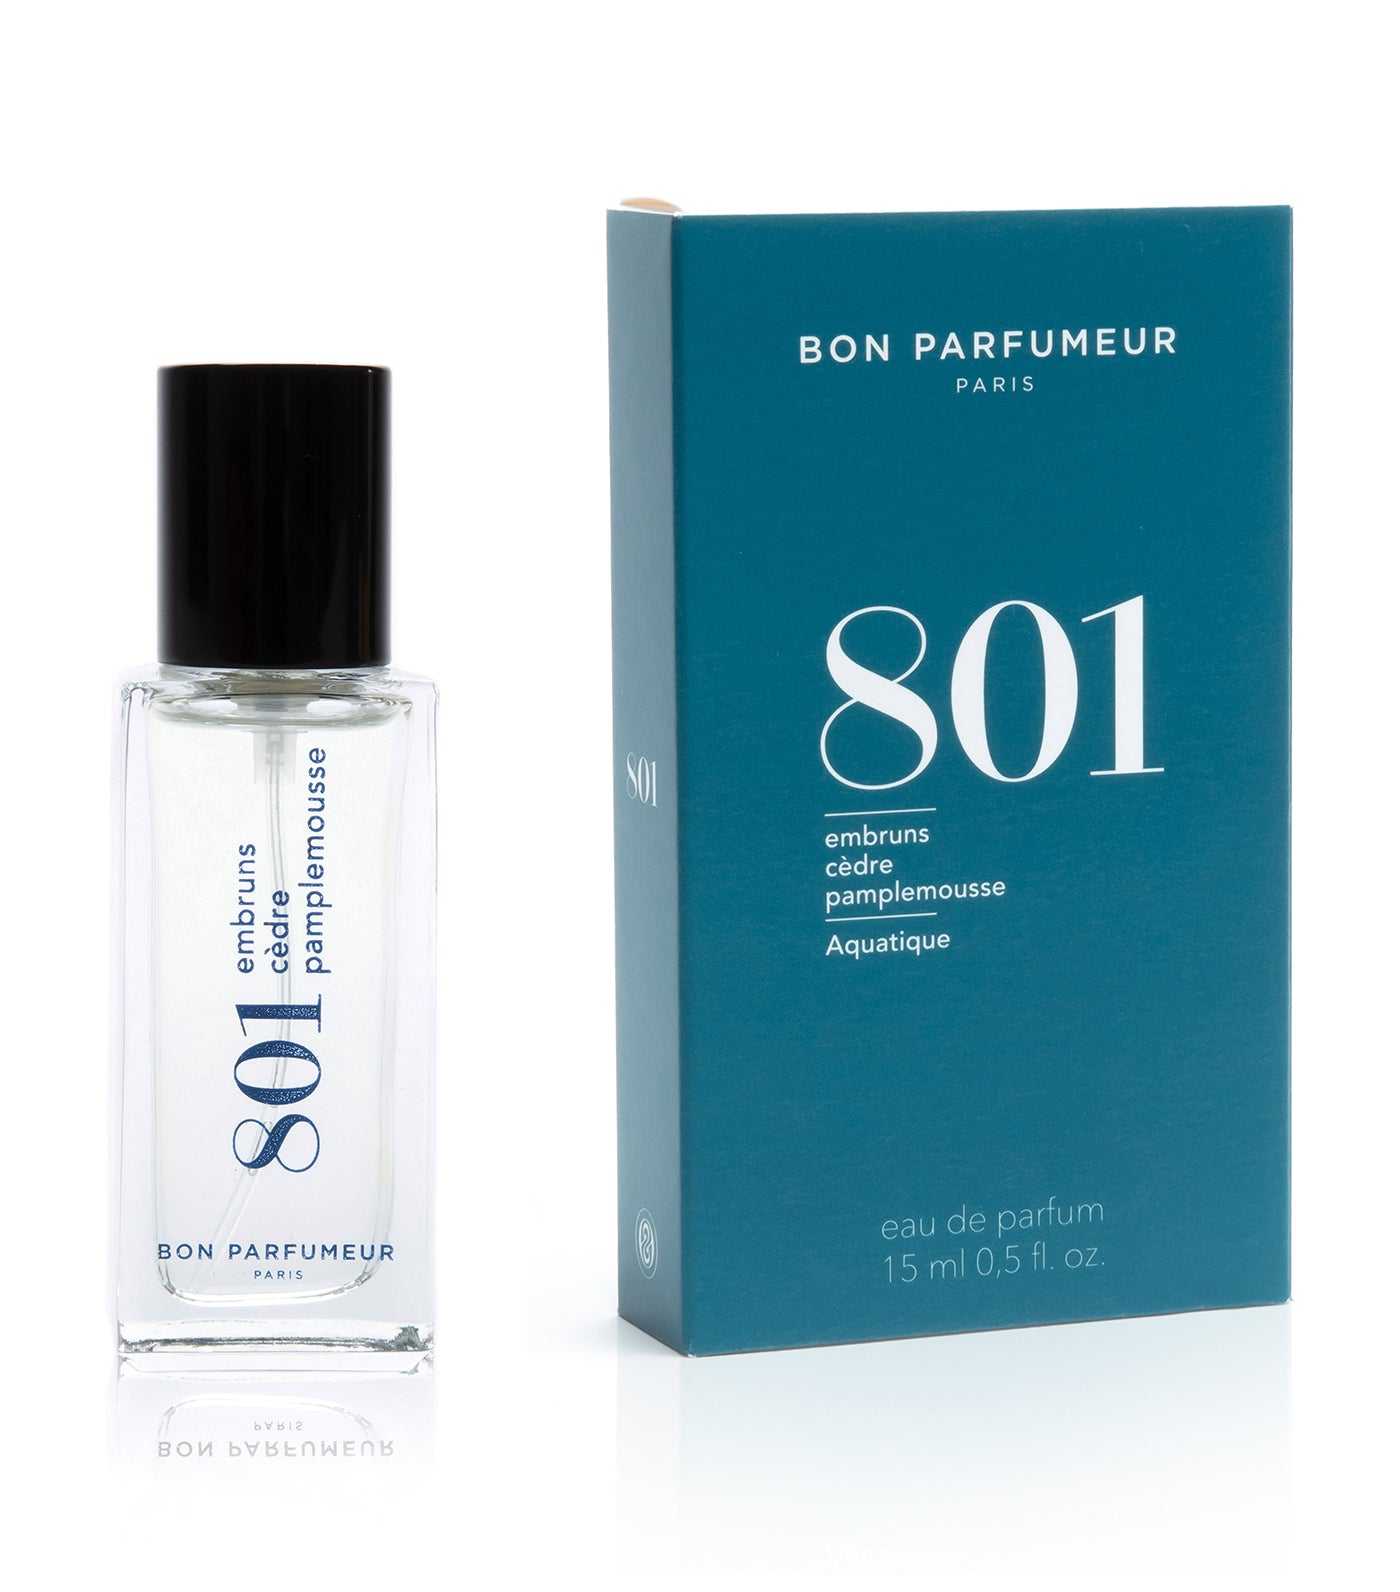 Eau de parfum 801 : sea spray, cedar and grapefruit